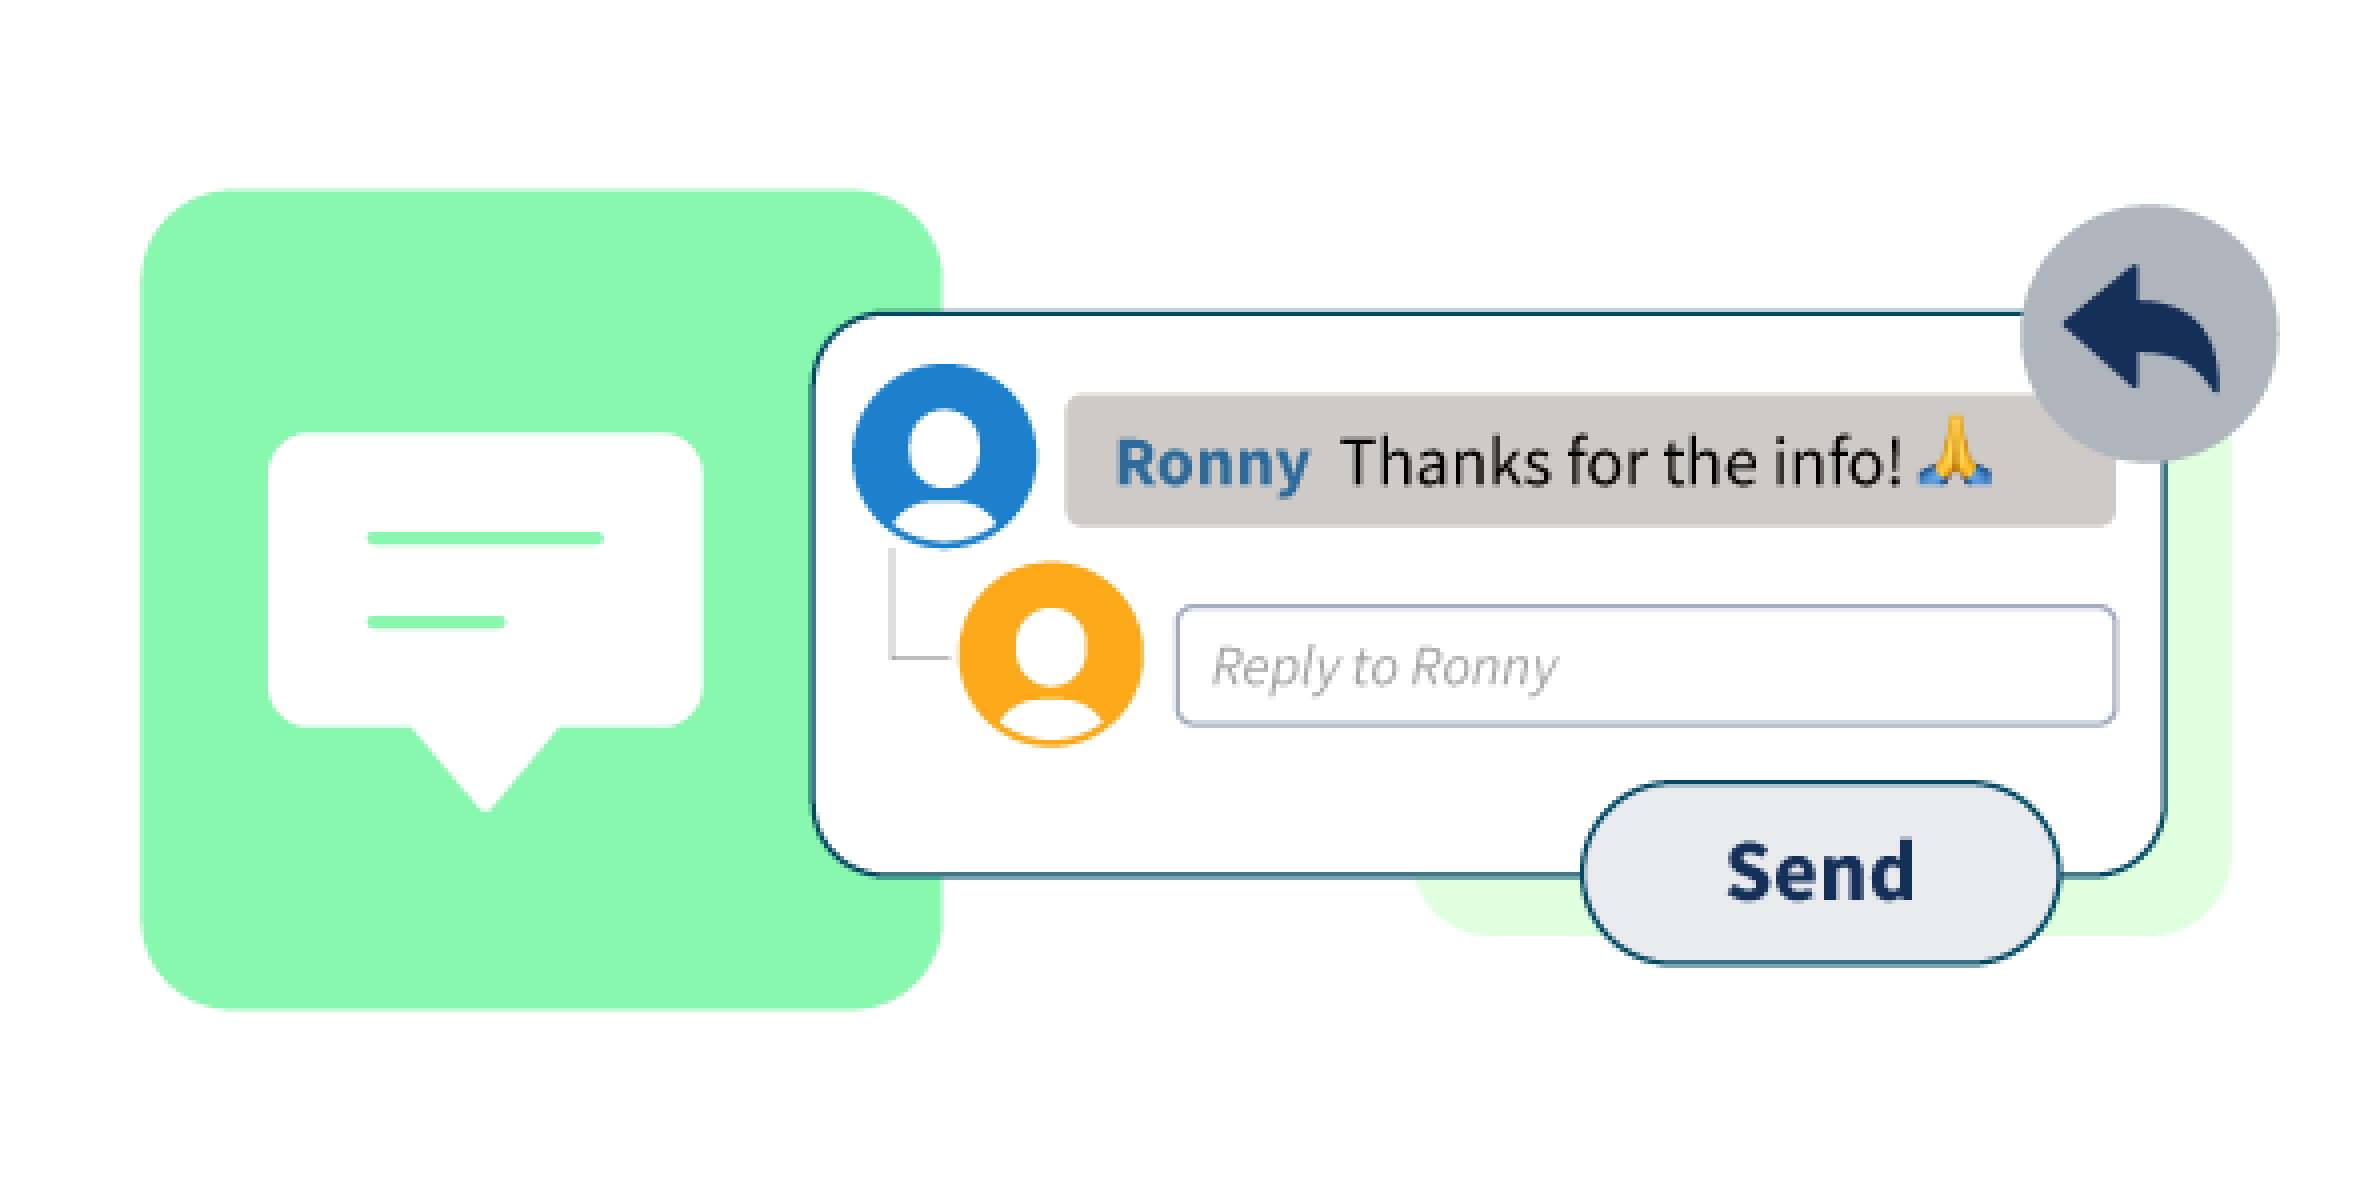 Hootsuite chat bubble showing messages